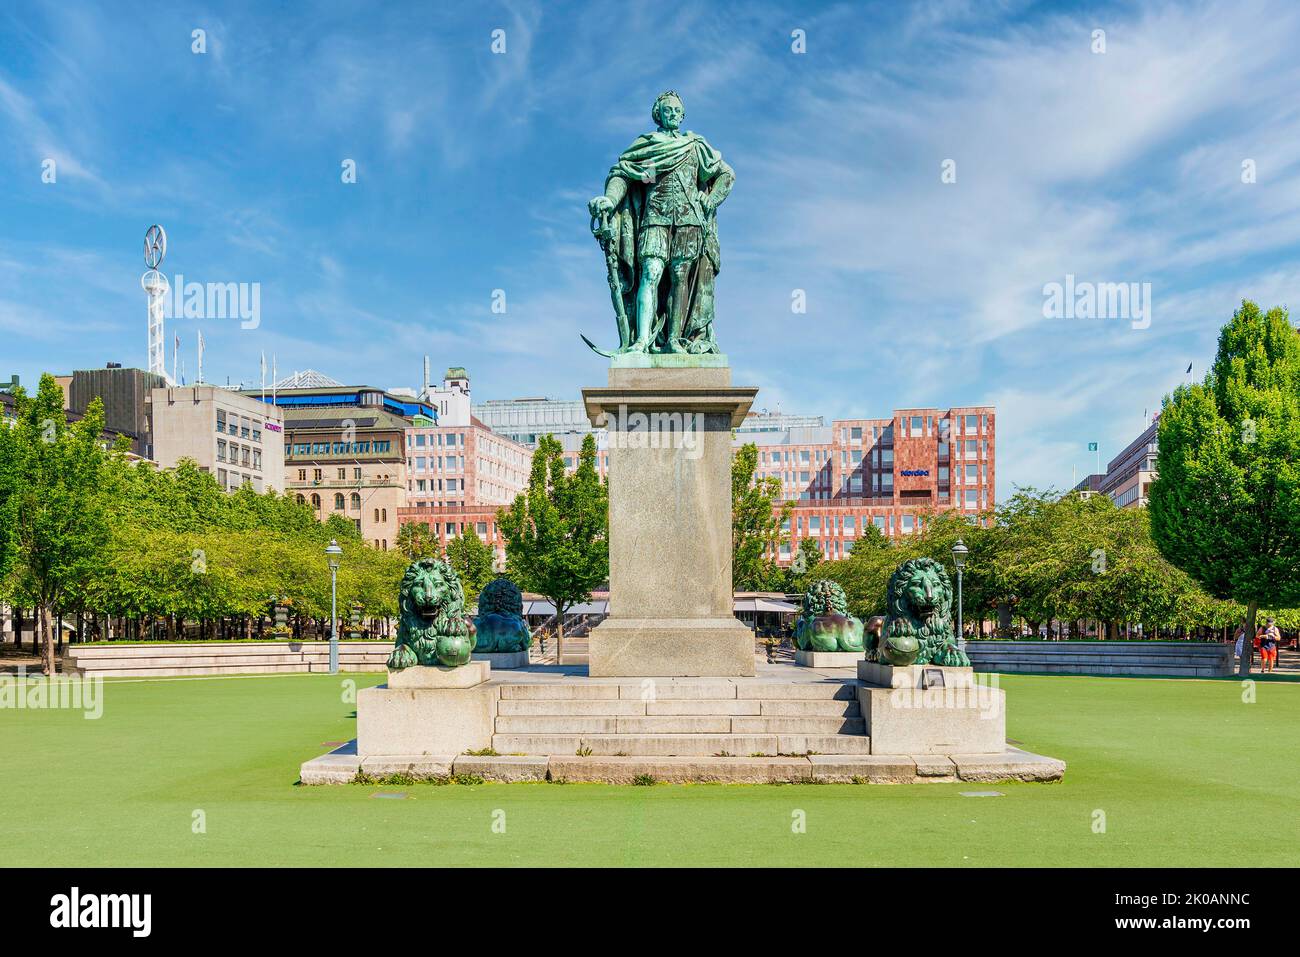 Statua del Re Carlo XIII che mediava il Giardino del Re, Kungstradgarden, o Kungsan, un parco nel quartiere di Norrmalm, nel centro di Stoccolma, in una giornata estiva di sole, Stoccolma, Svezia Foto Stock